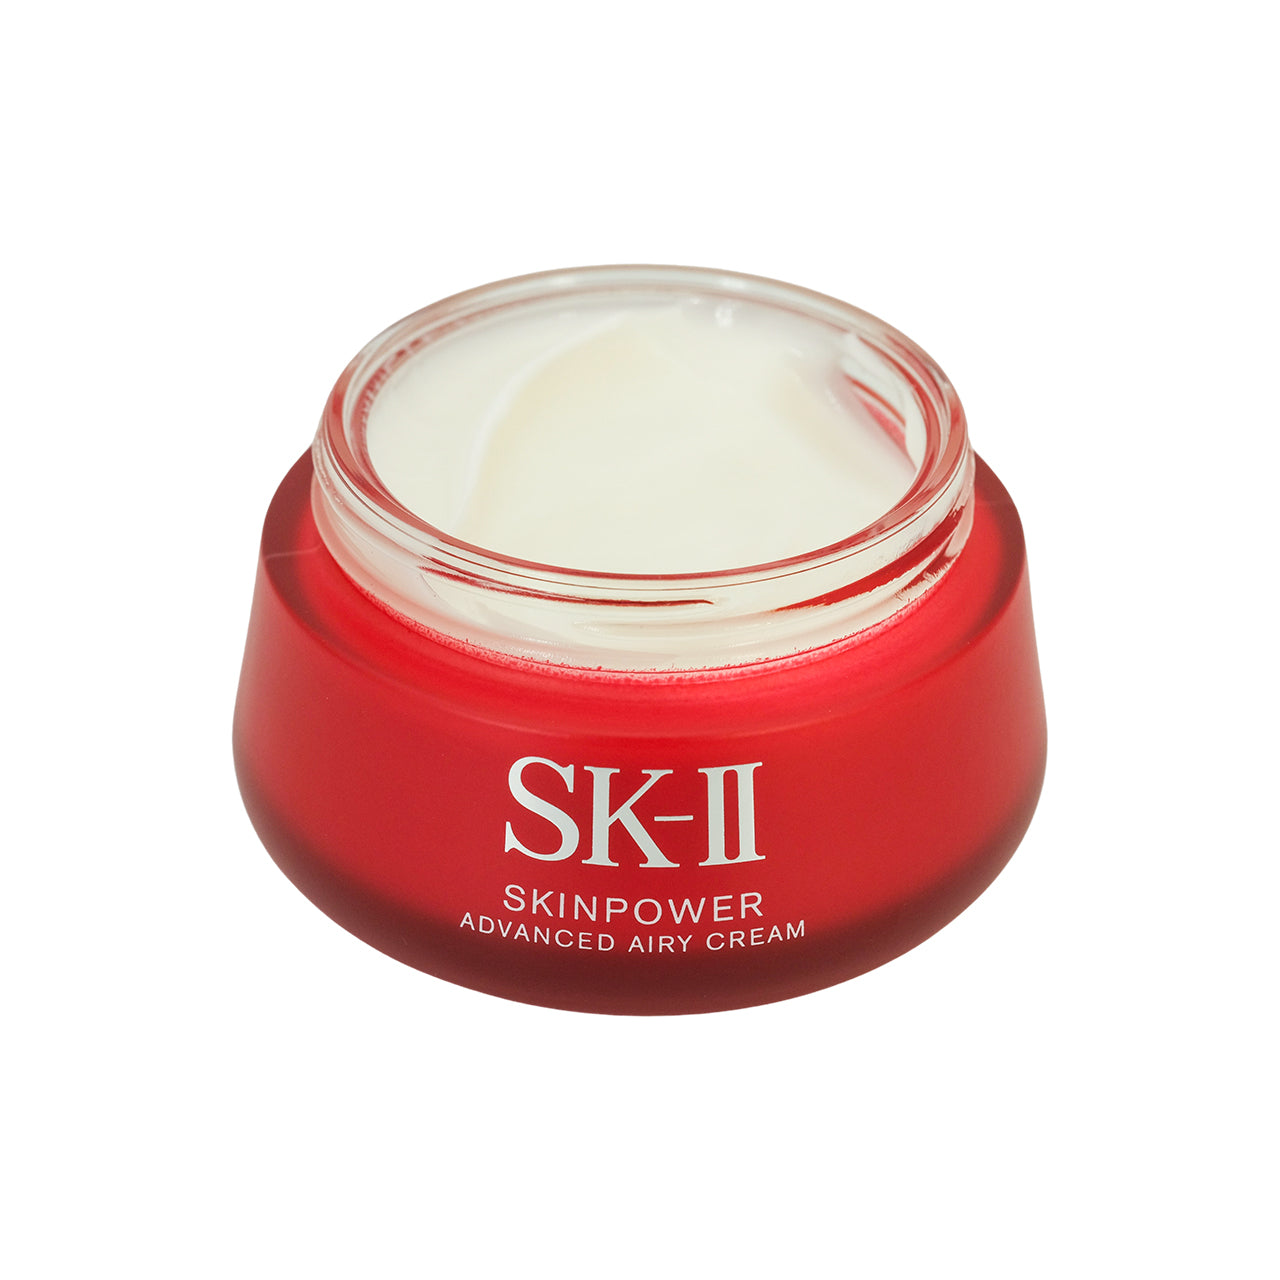 SK-II Skinpower Advanced Airy Cream 80g | Sasa Global eShop